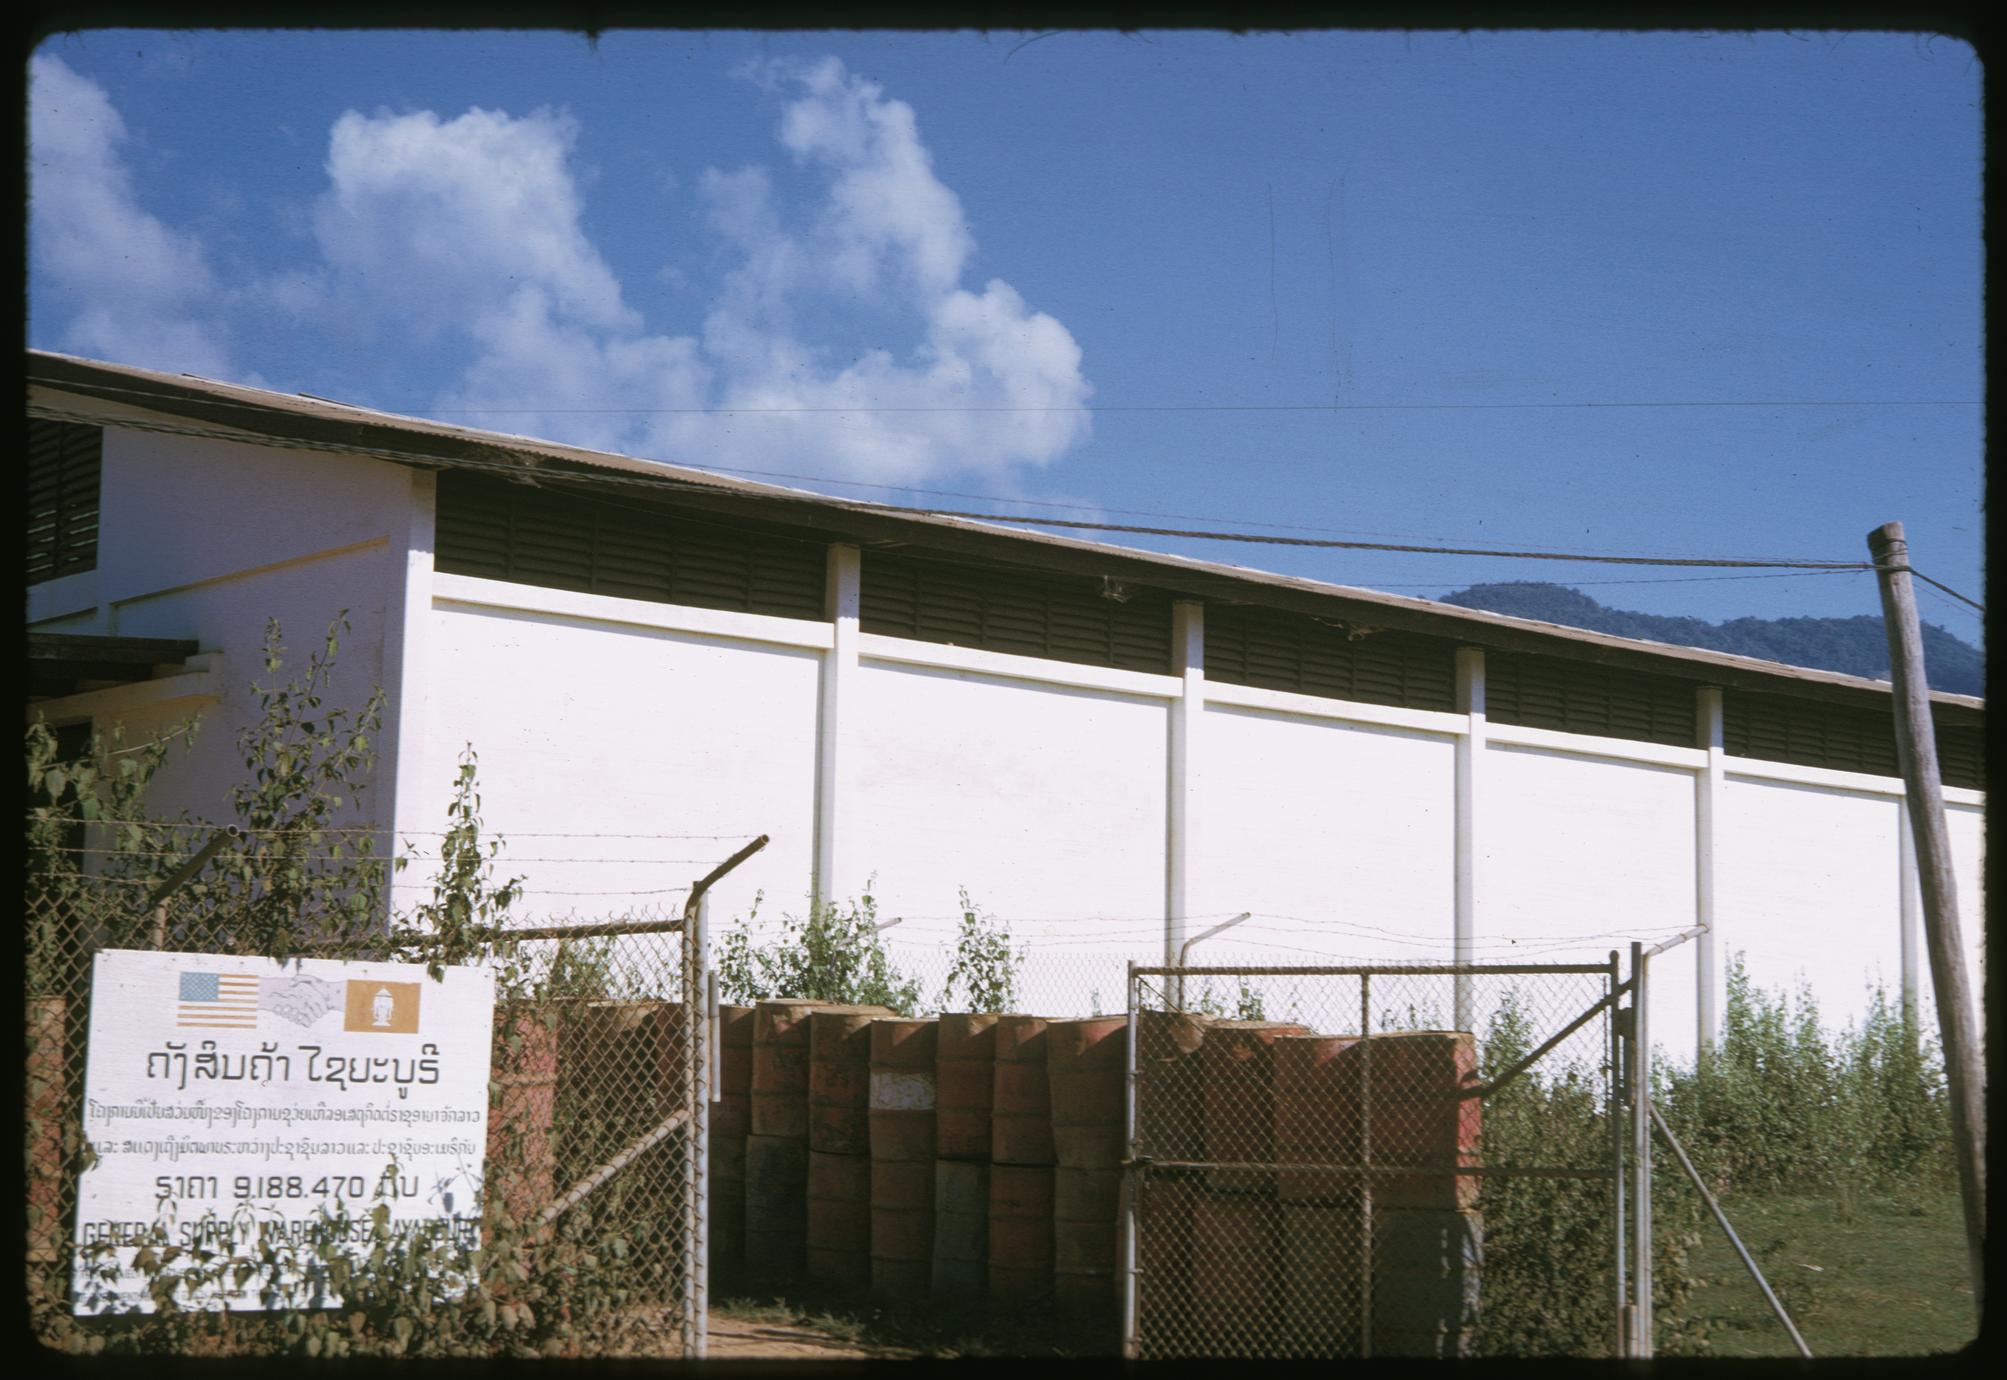 Xayabury : USAID warehouse